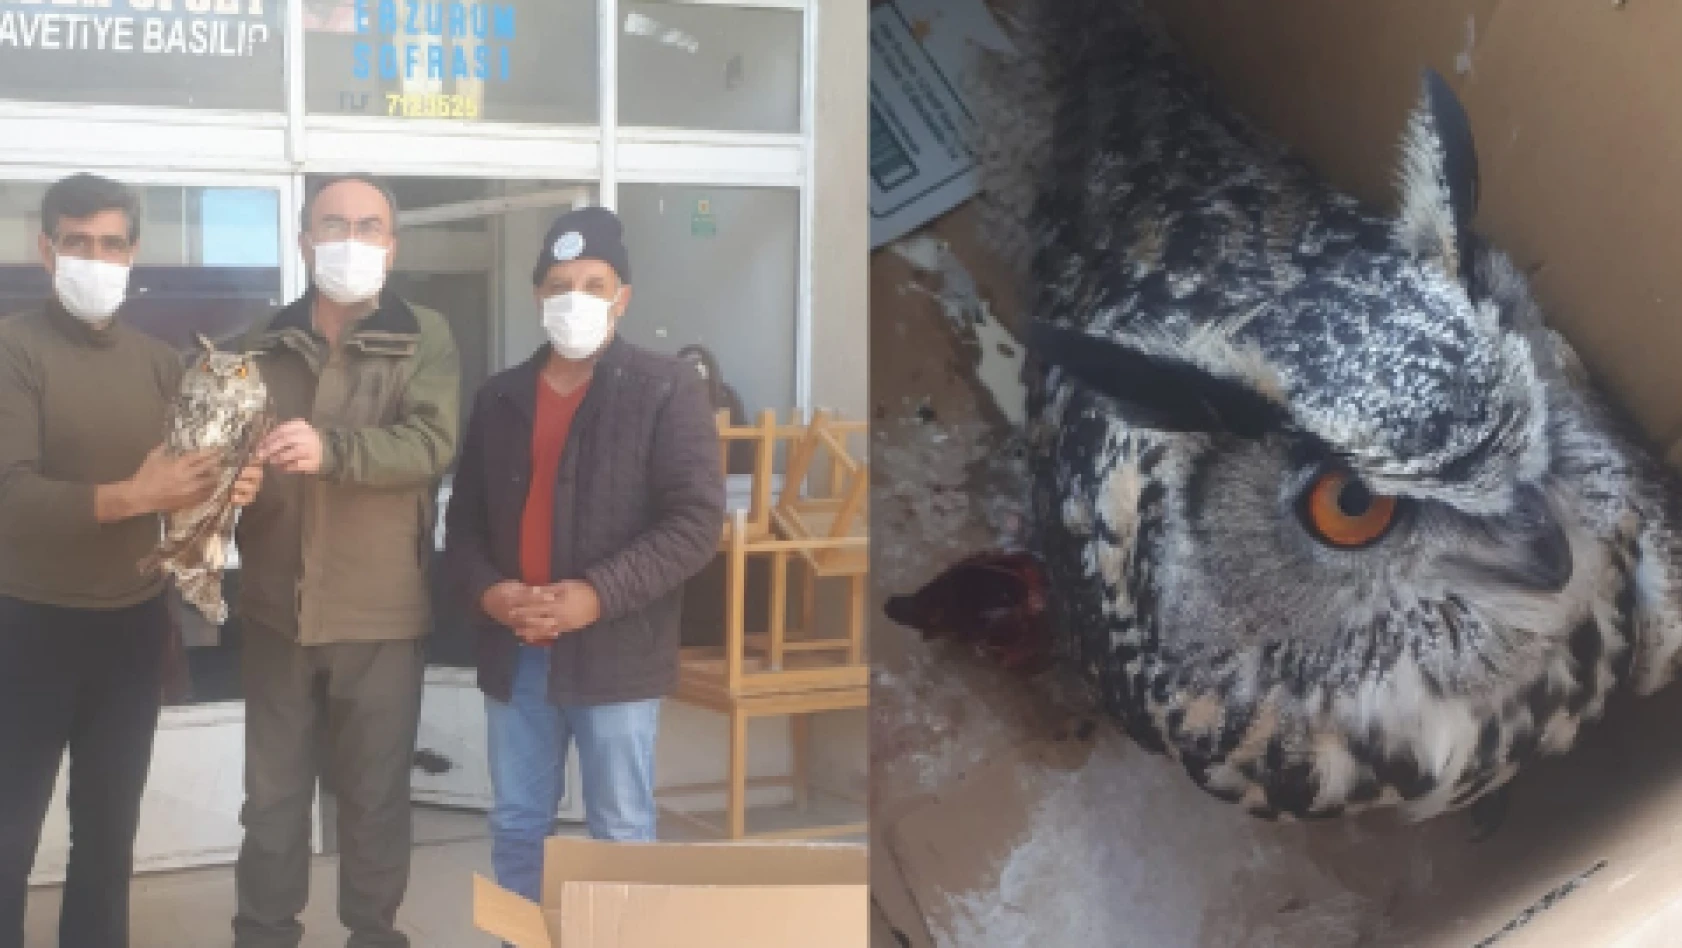 Yaralı puhu kuşu tedavi altına alındı